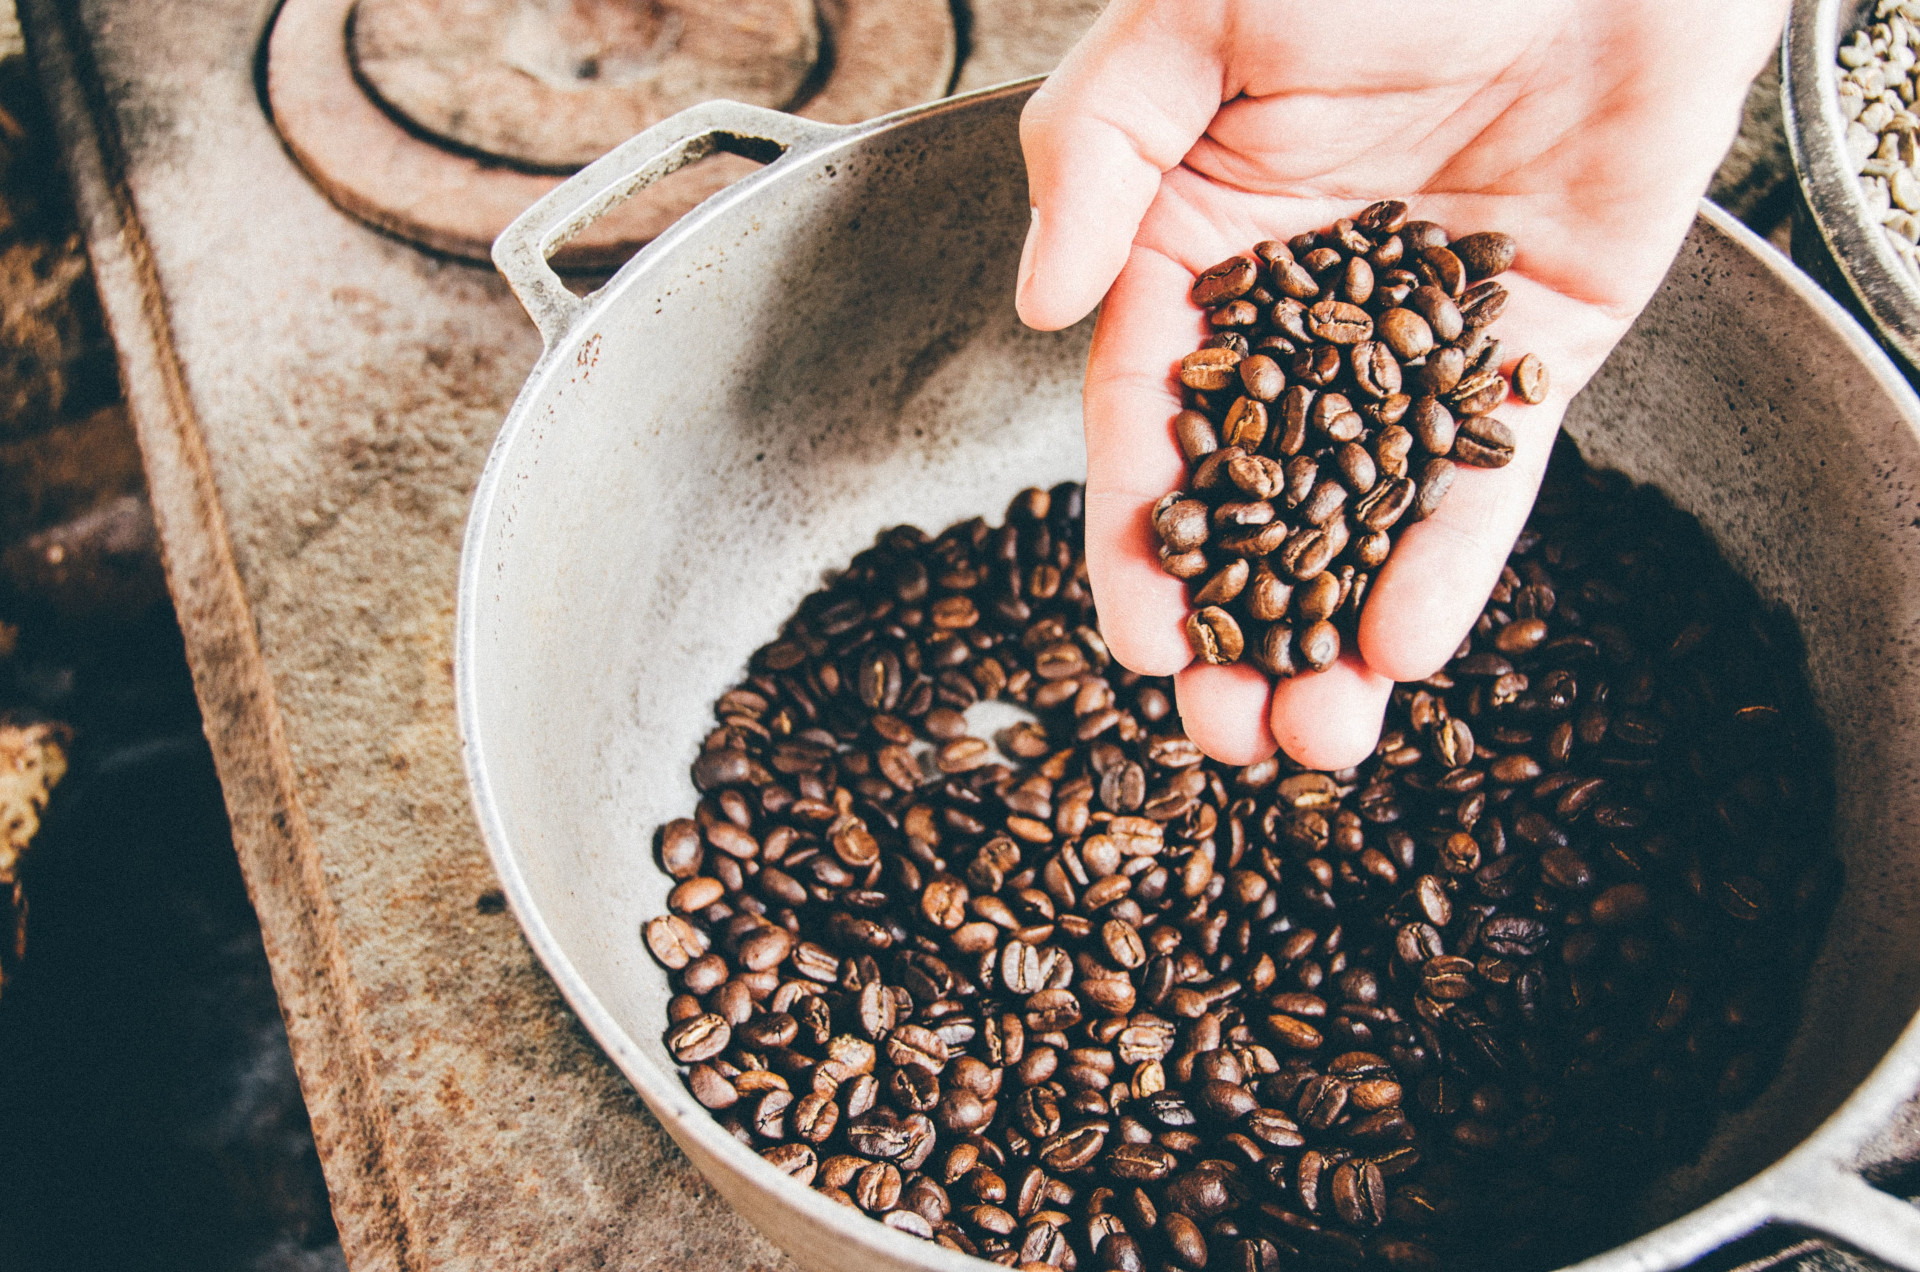 Как выбрать кофе в зернах